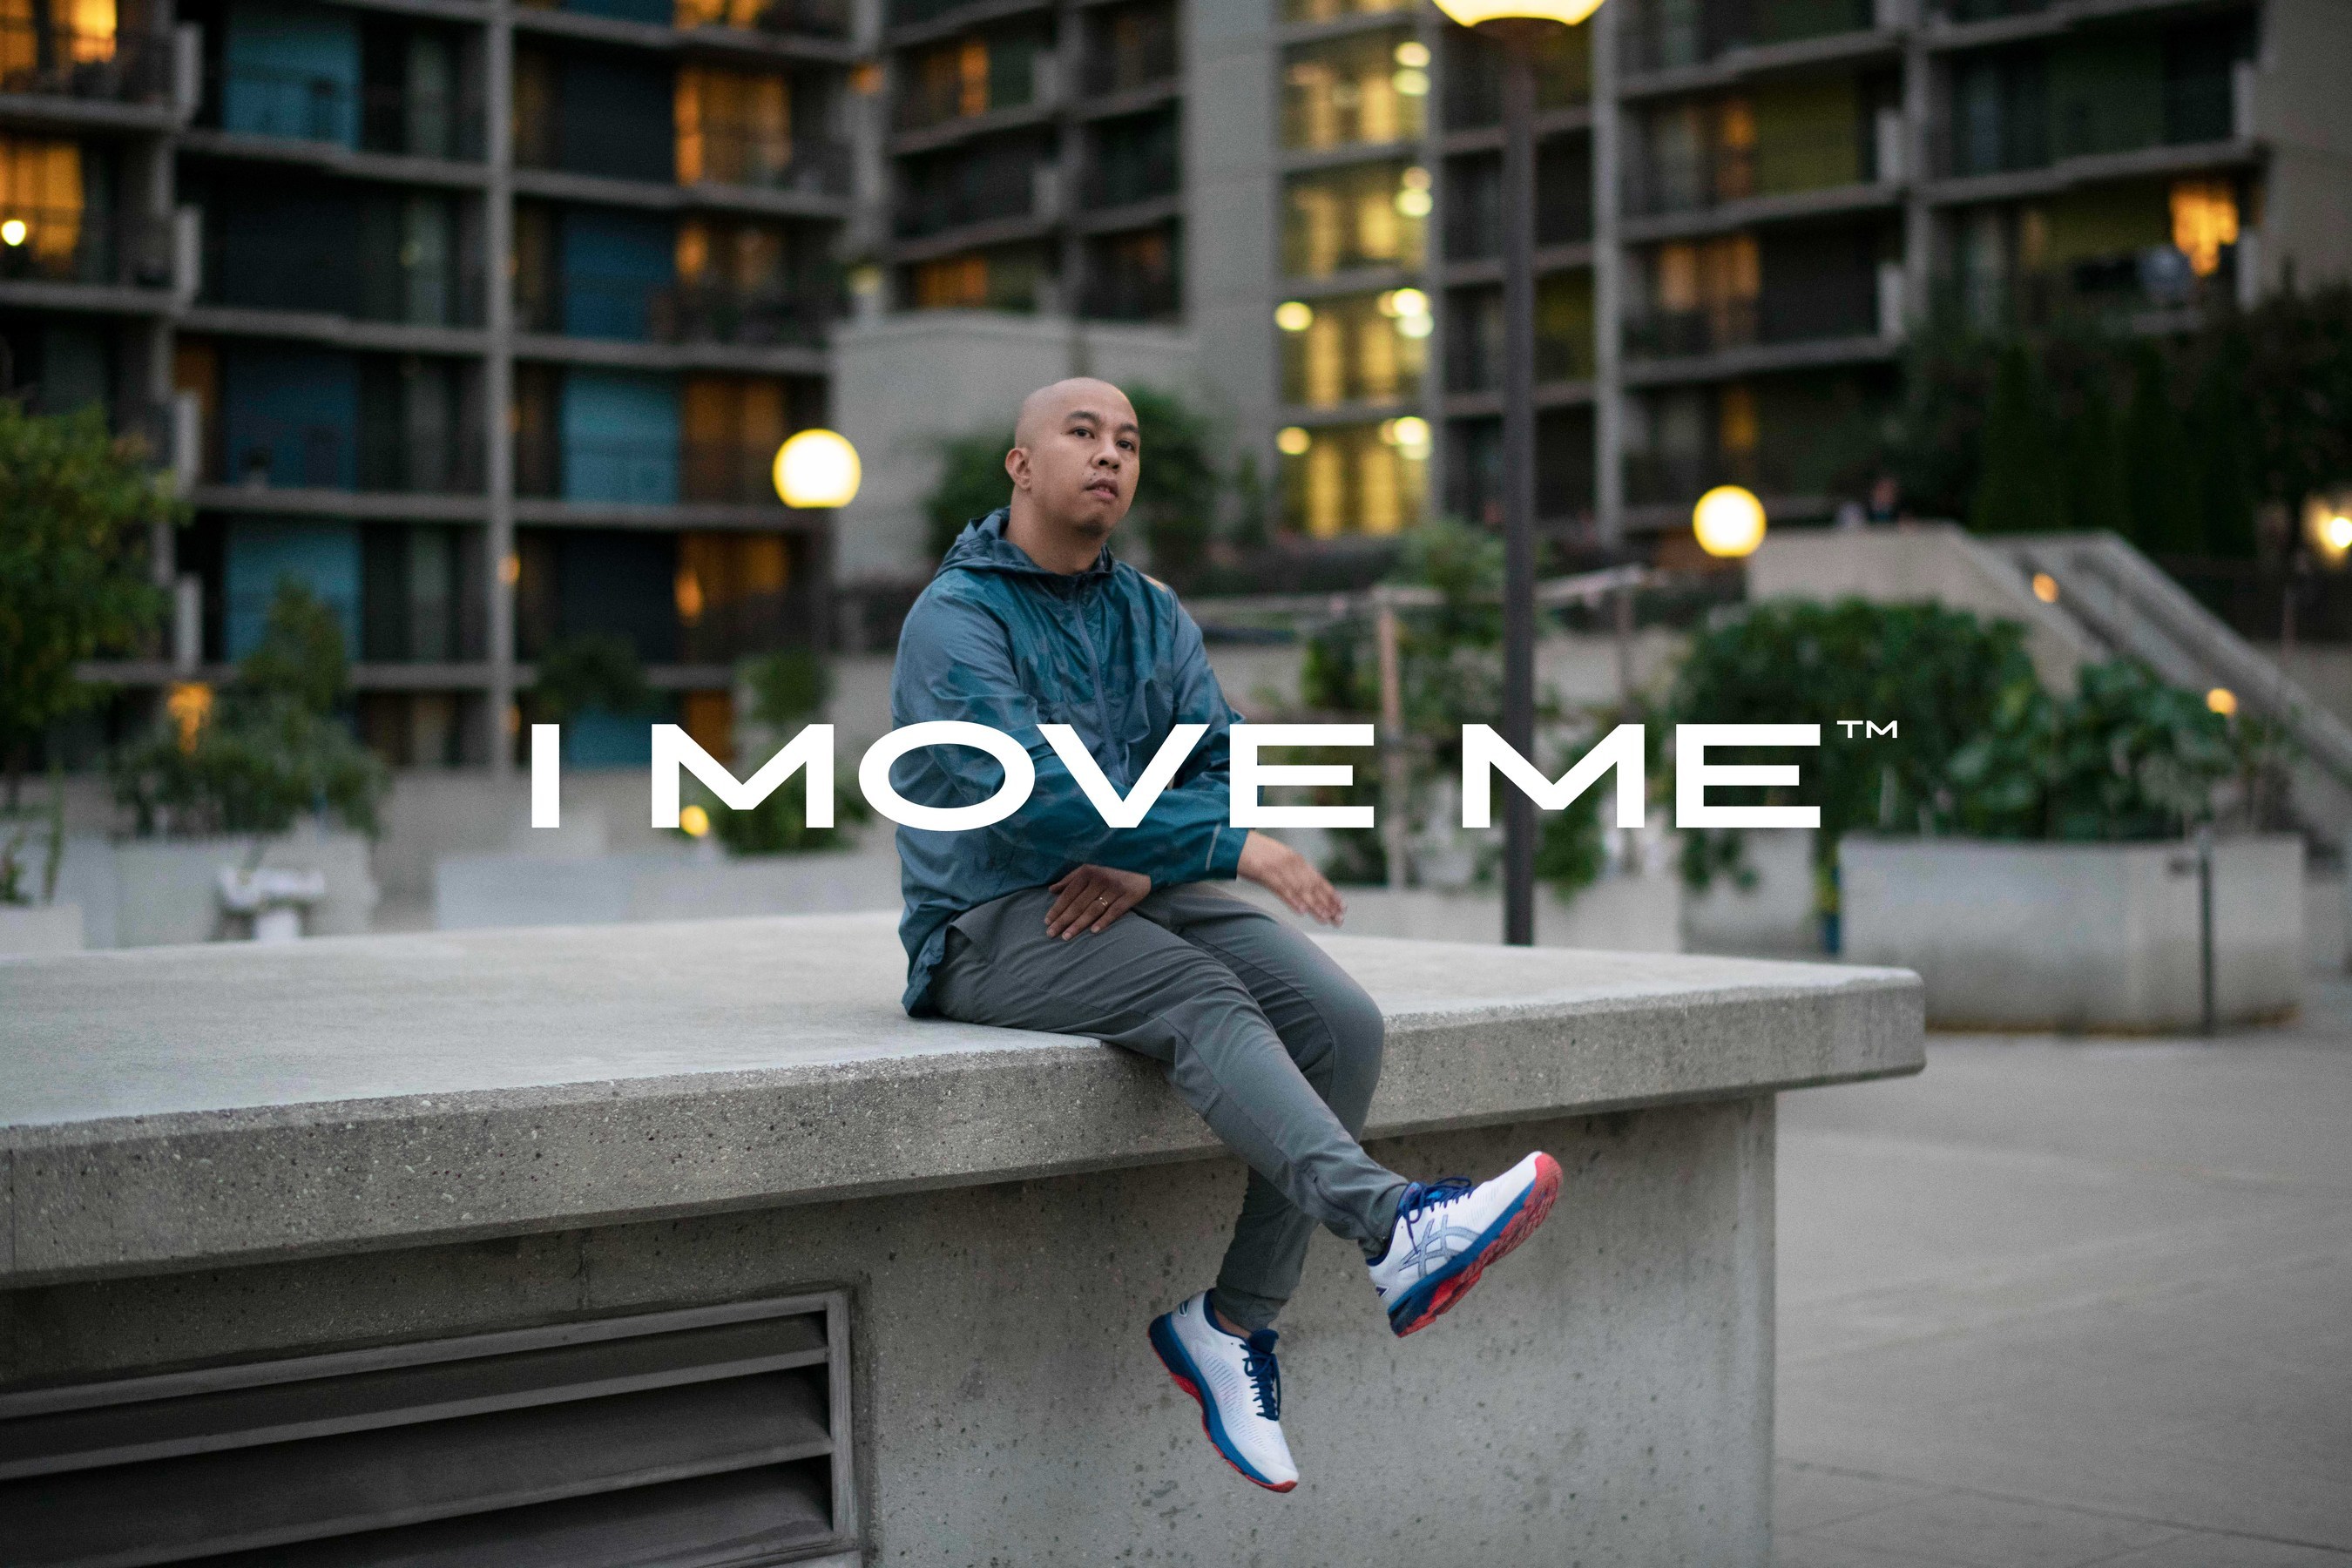 Asics campagna I Move Me 2018